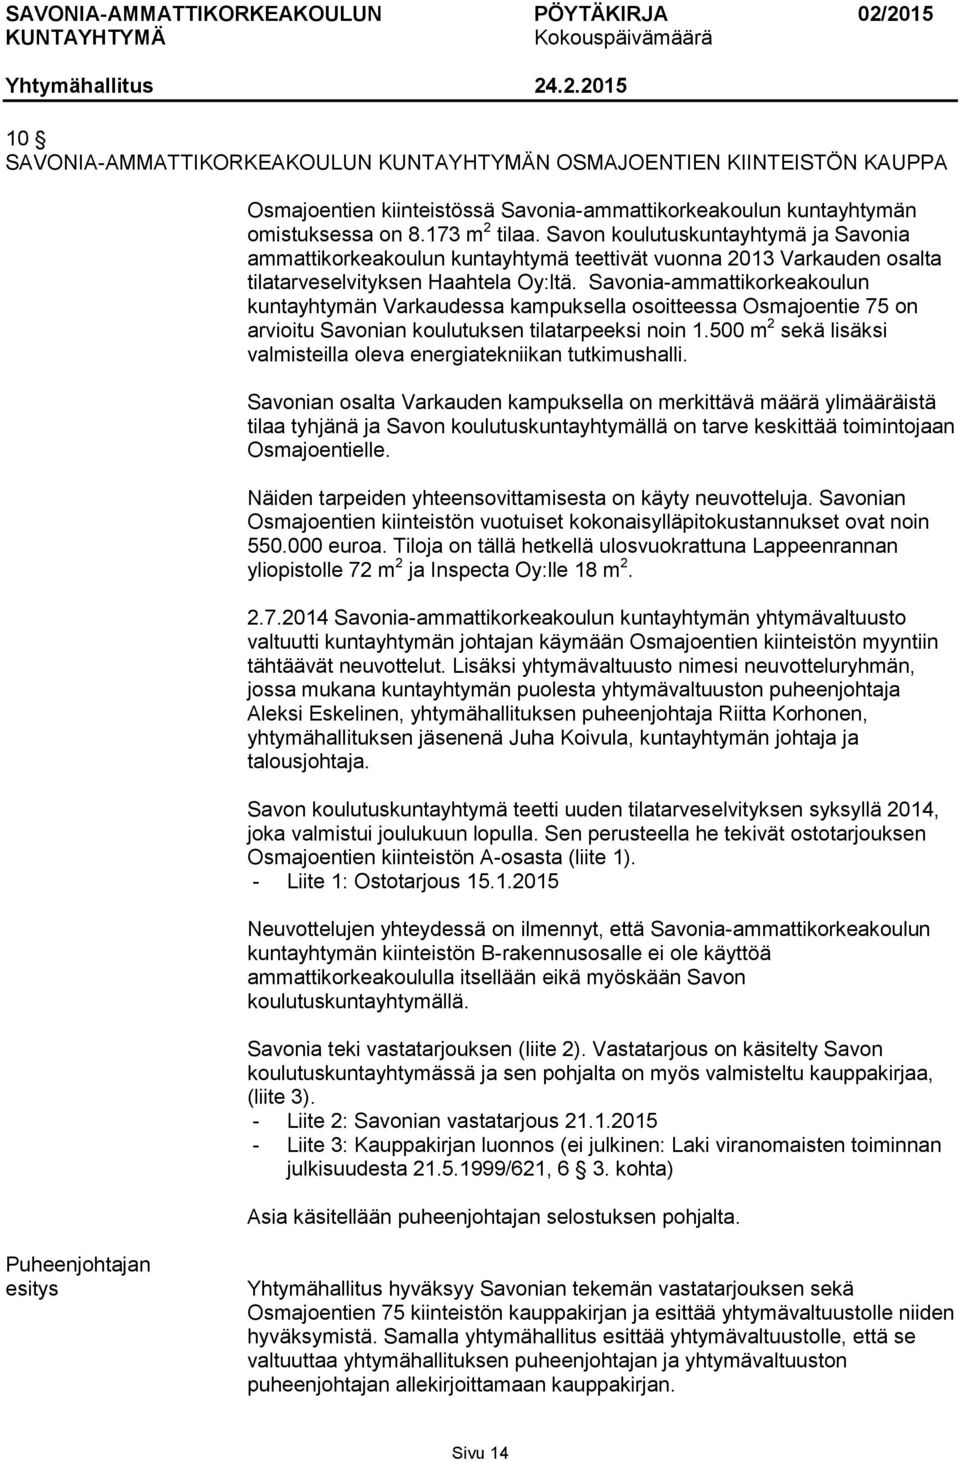 Savonia-ammattikorkeakoulun kuntayhtymän Varkaudessa kampuksella osoitteessa Osmajoentie 75 on arvioitu Savonian koulutuksen tilatarpeeksi noin 1.